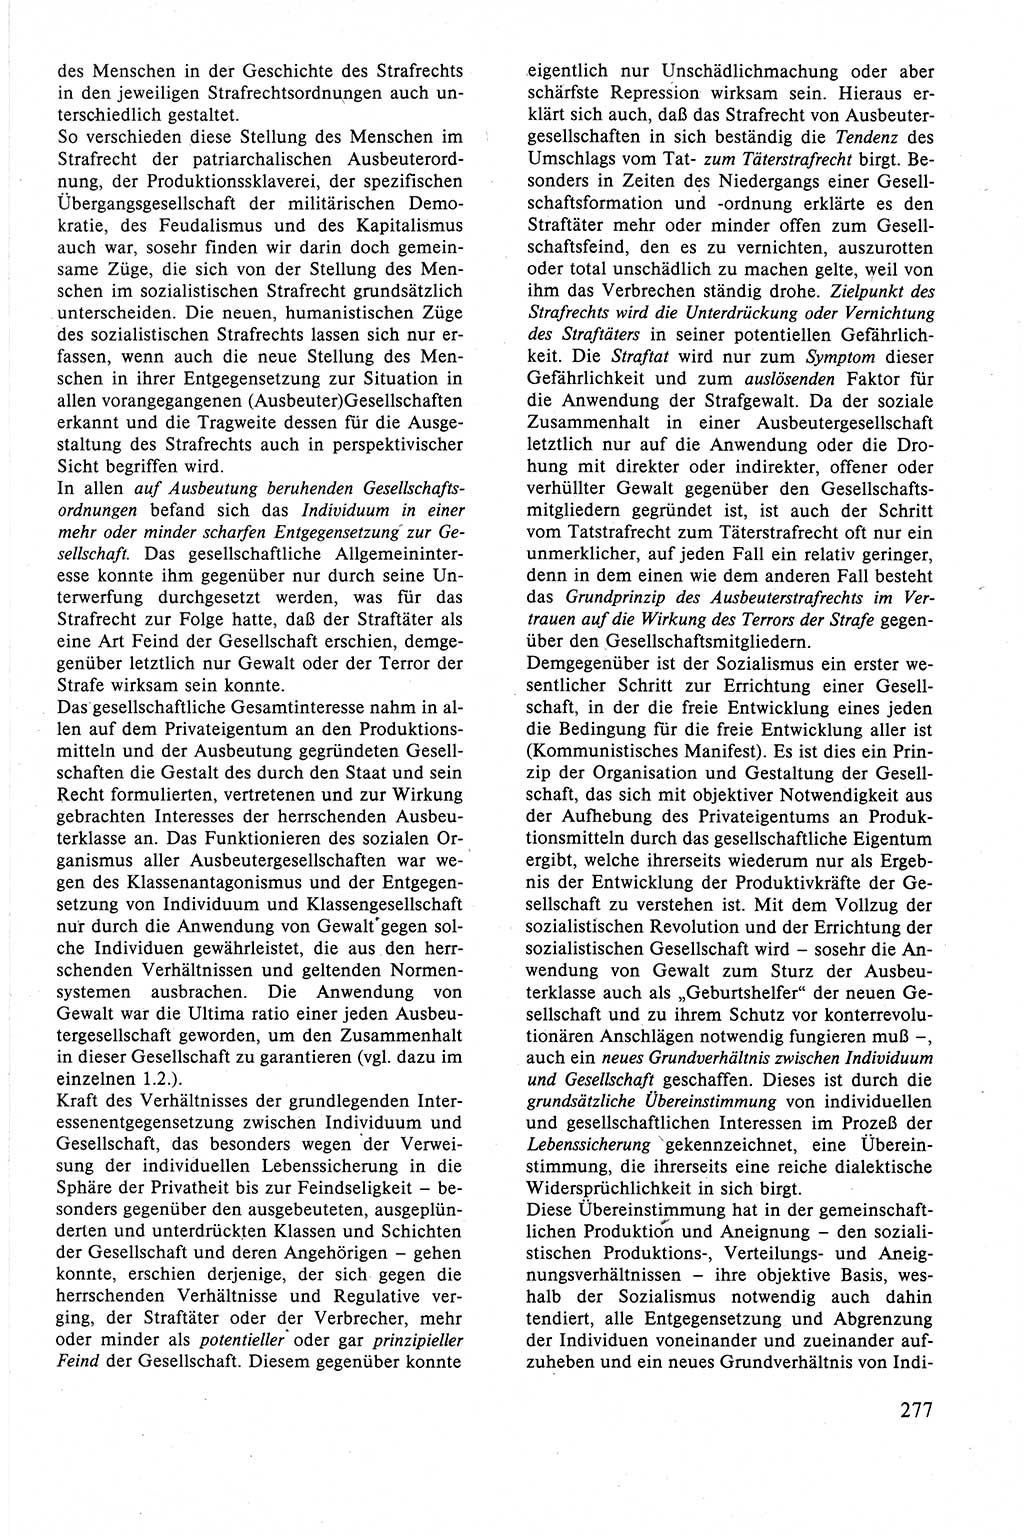 Strafrecht der DDR (Deutsche Demokratische Republik), Lehrbuch 1988, Seite 277 (Strafr. DDR Lb. 1988, S. 277)